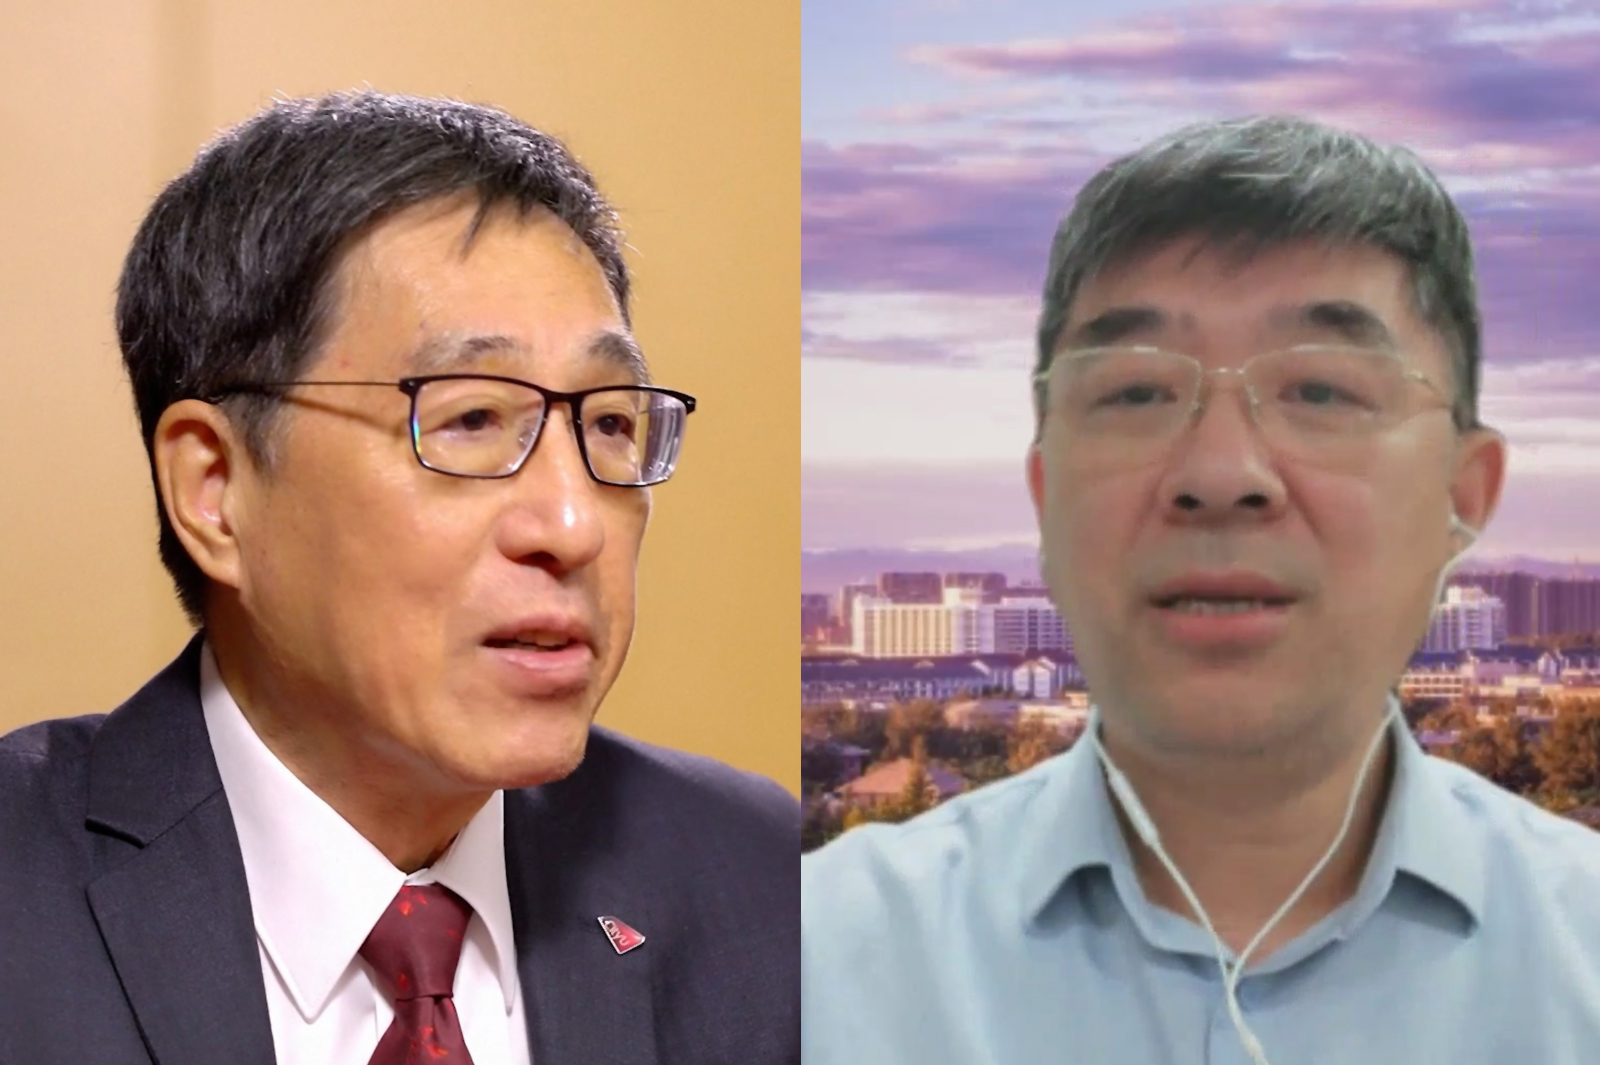 President Kuo (left) and Professor Zheng Li